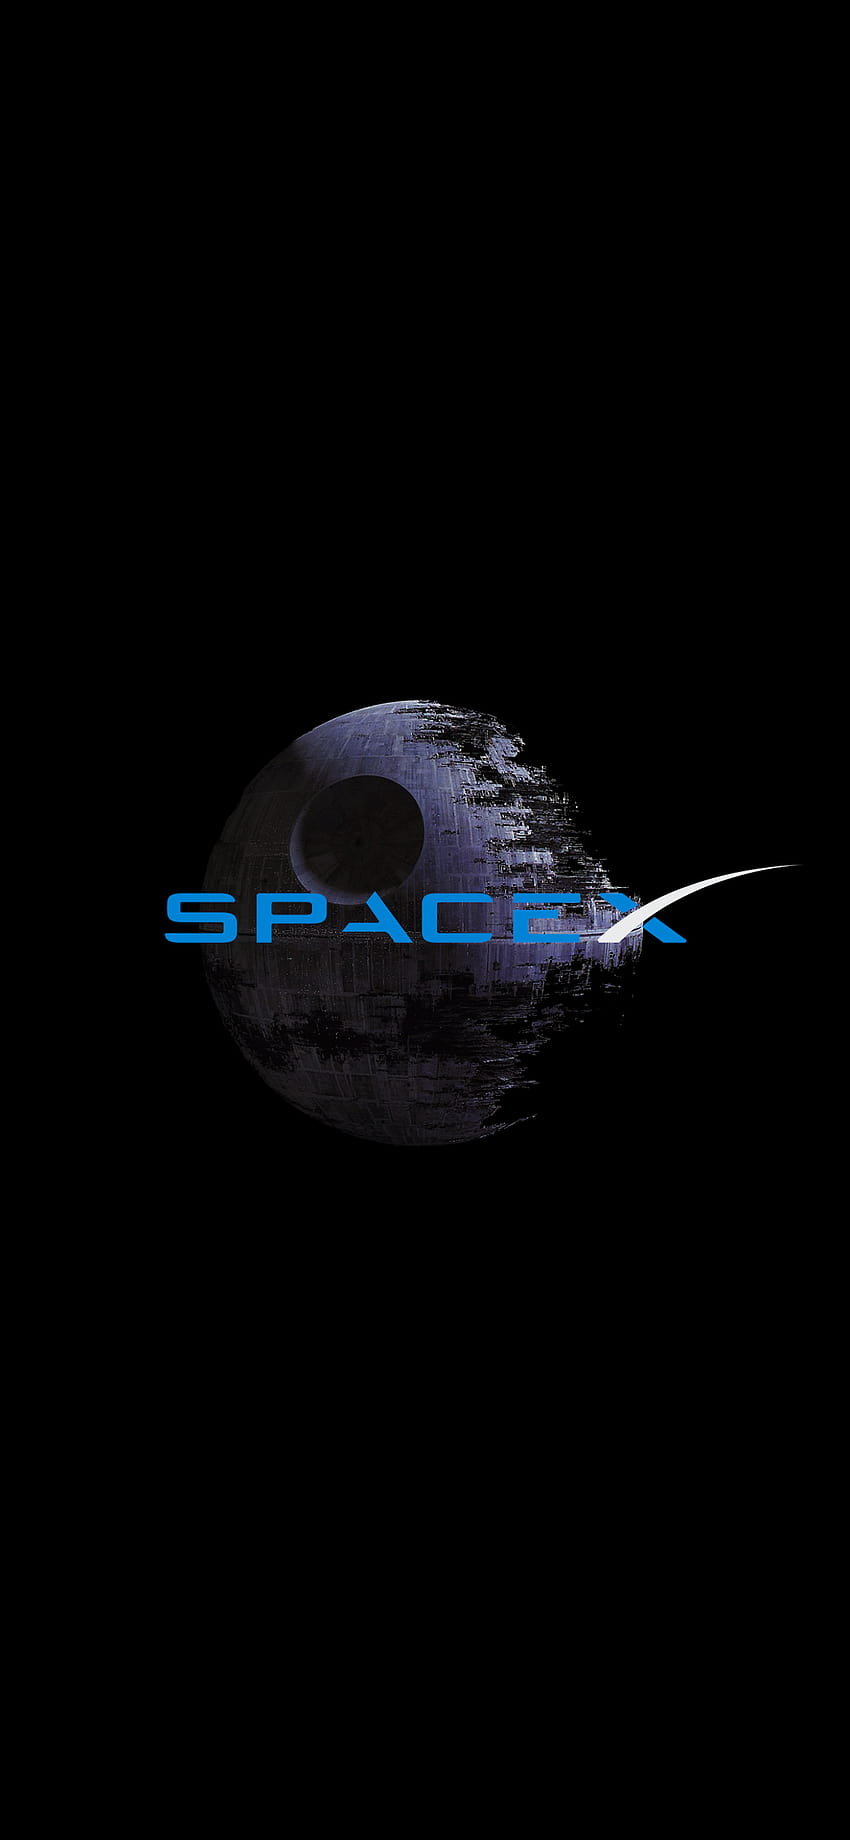 SPACEX ESTRELLA DE LA MUERTE AMOLED, logotipo de spacex fondo de pantalla del teléfono